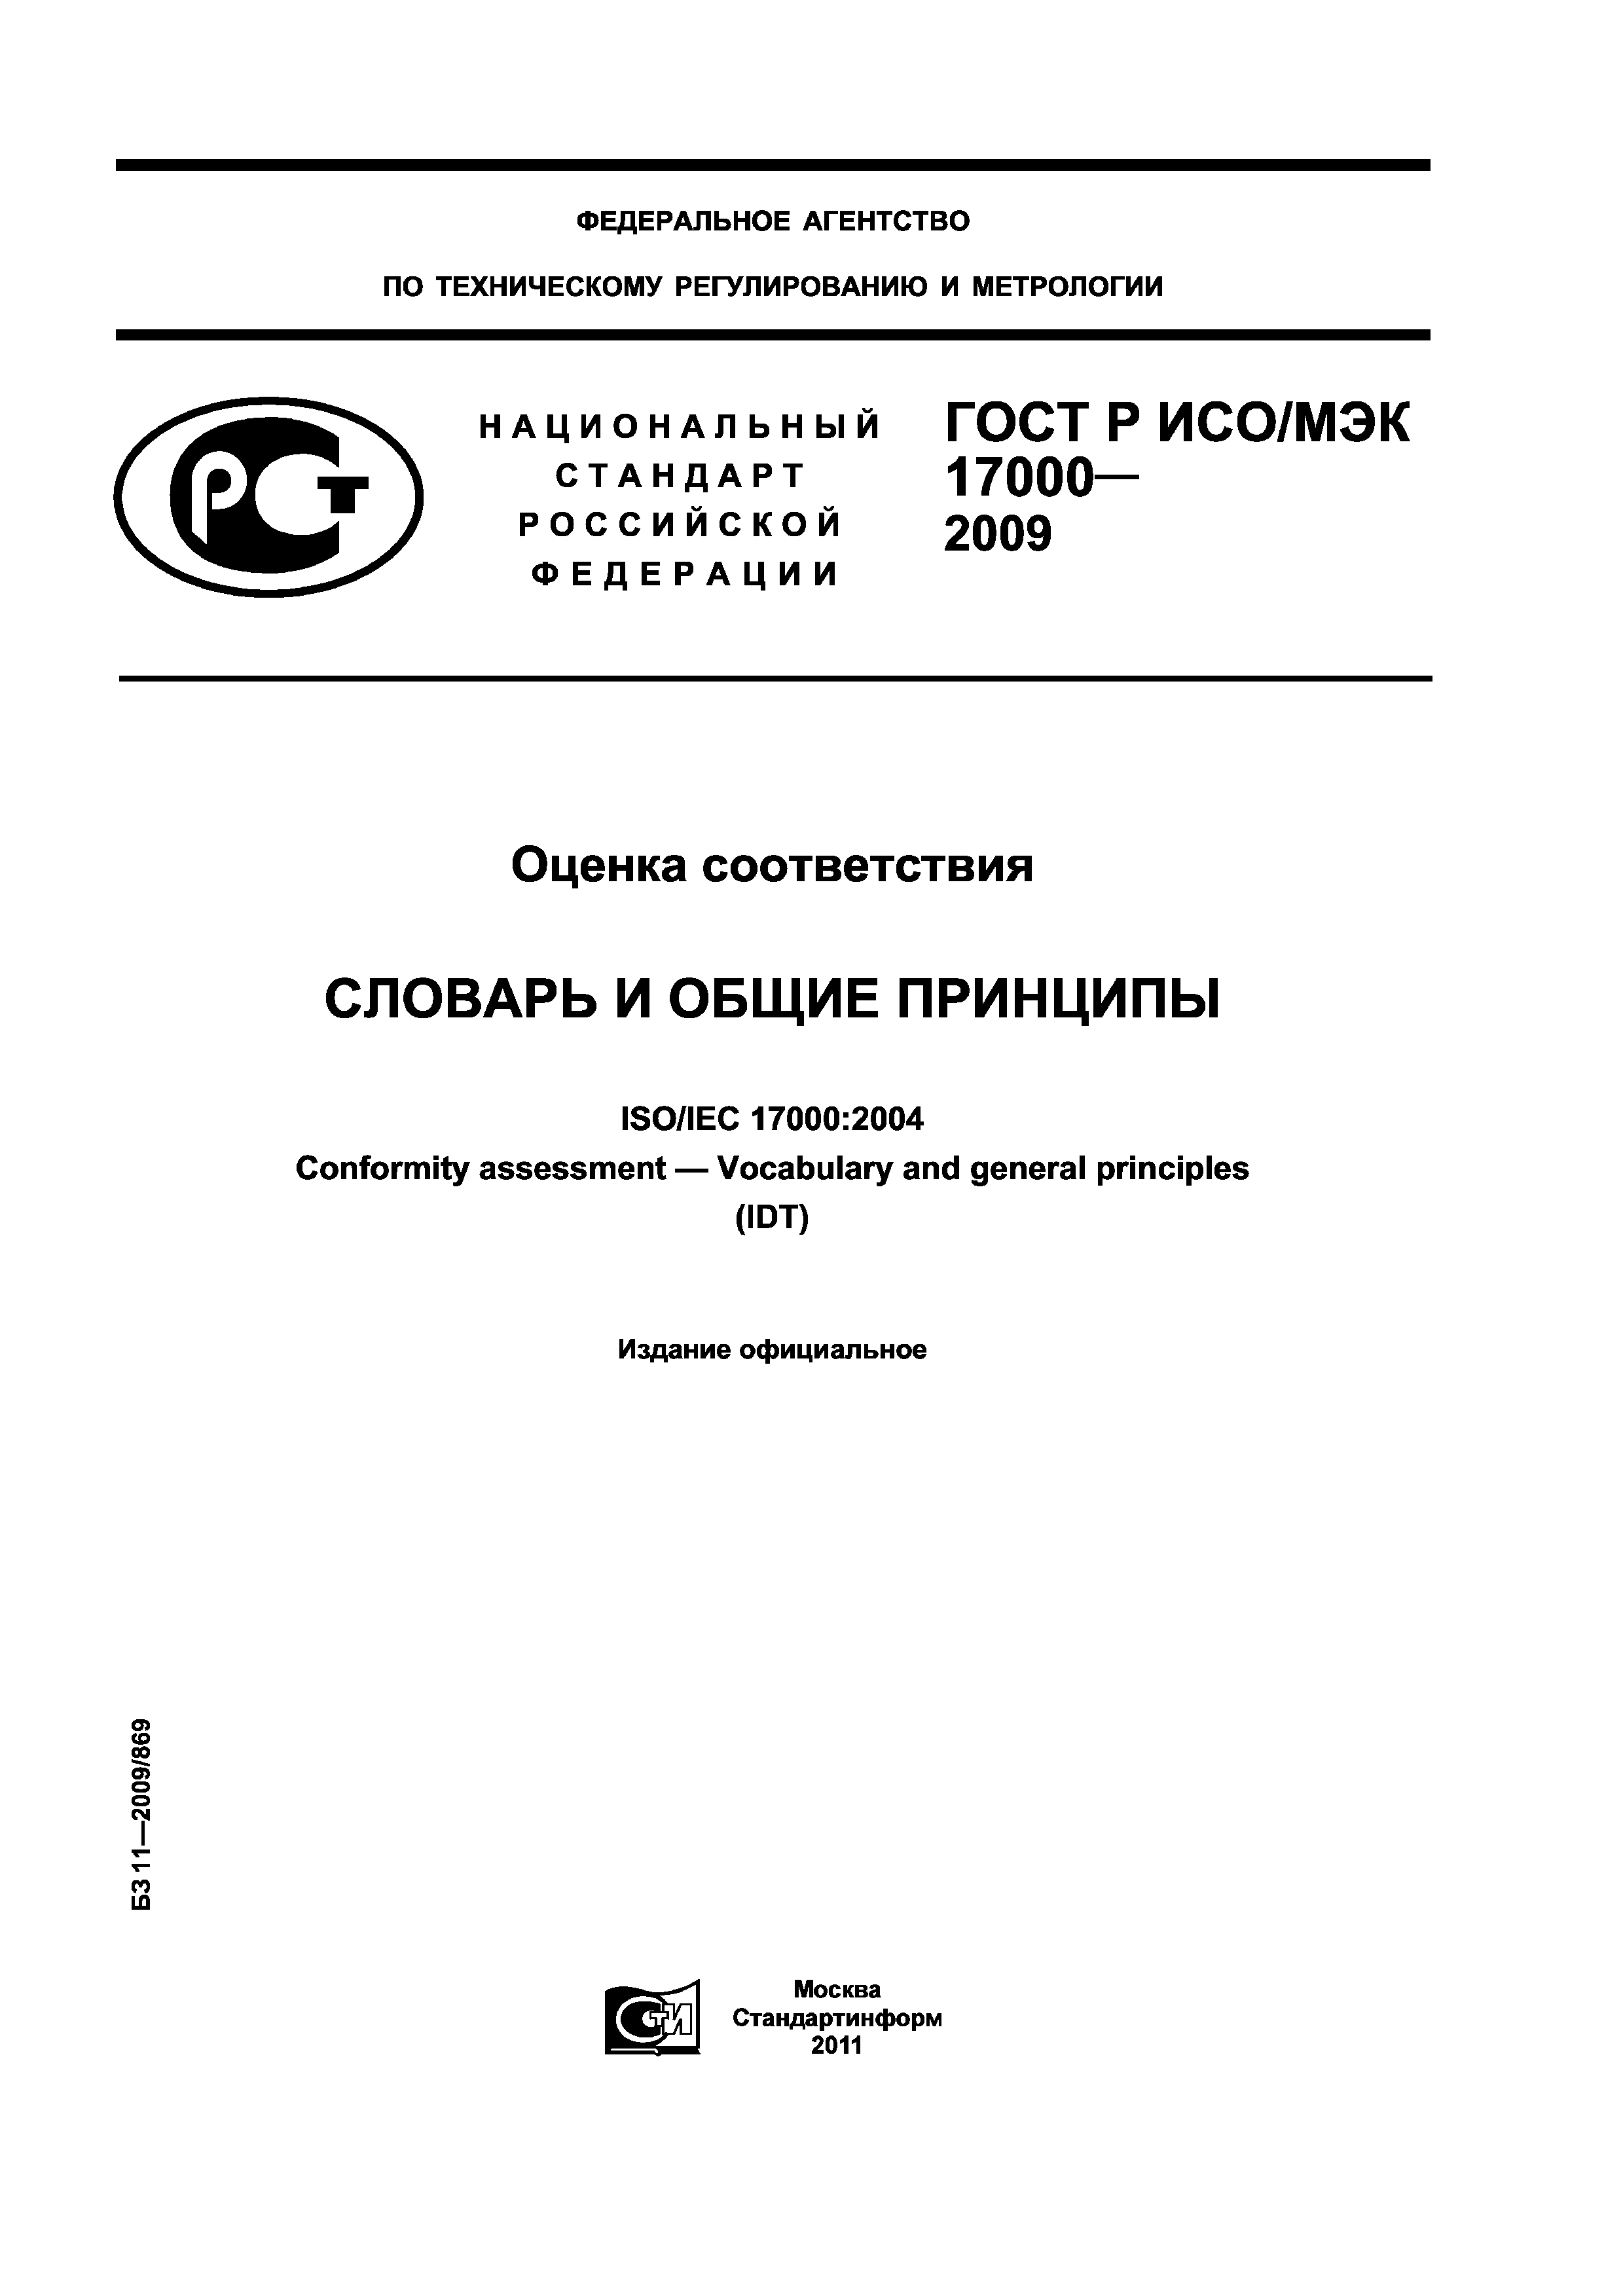 ГОСТ Р ИСО/МЭК 17000-2009